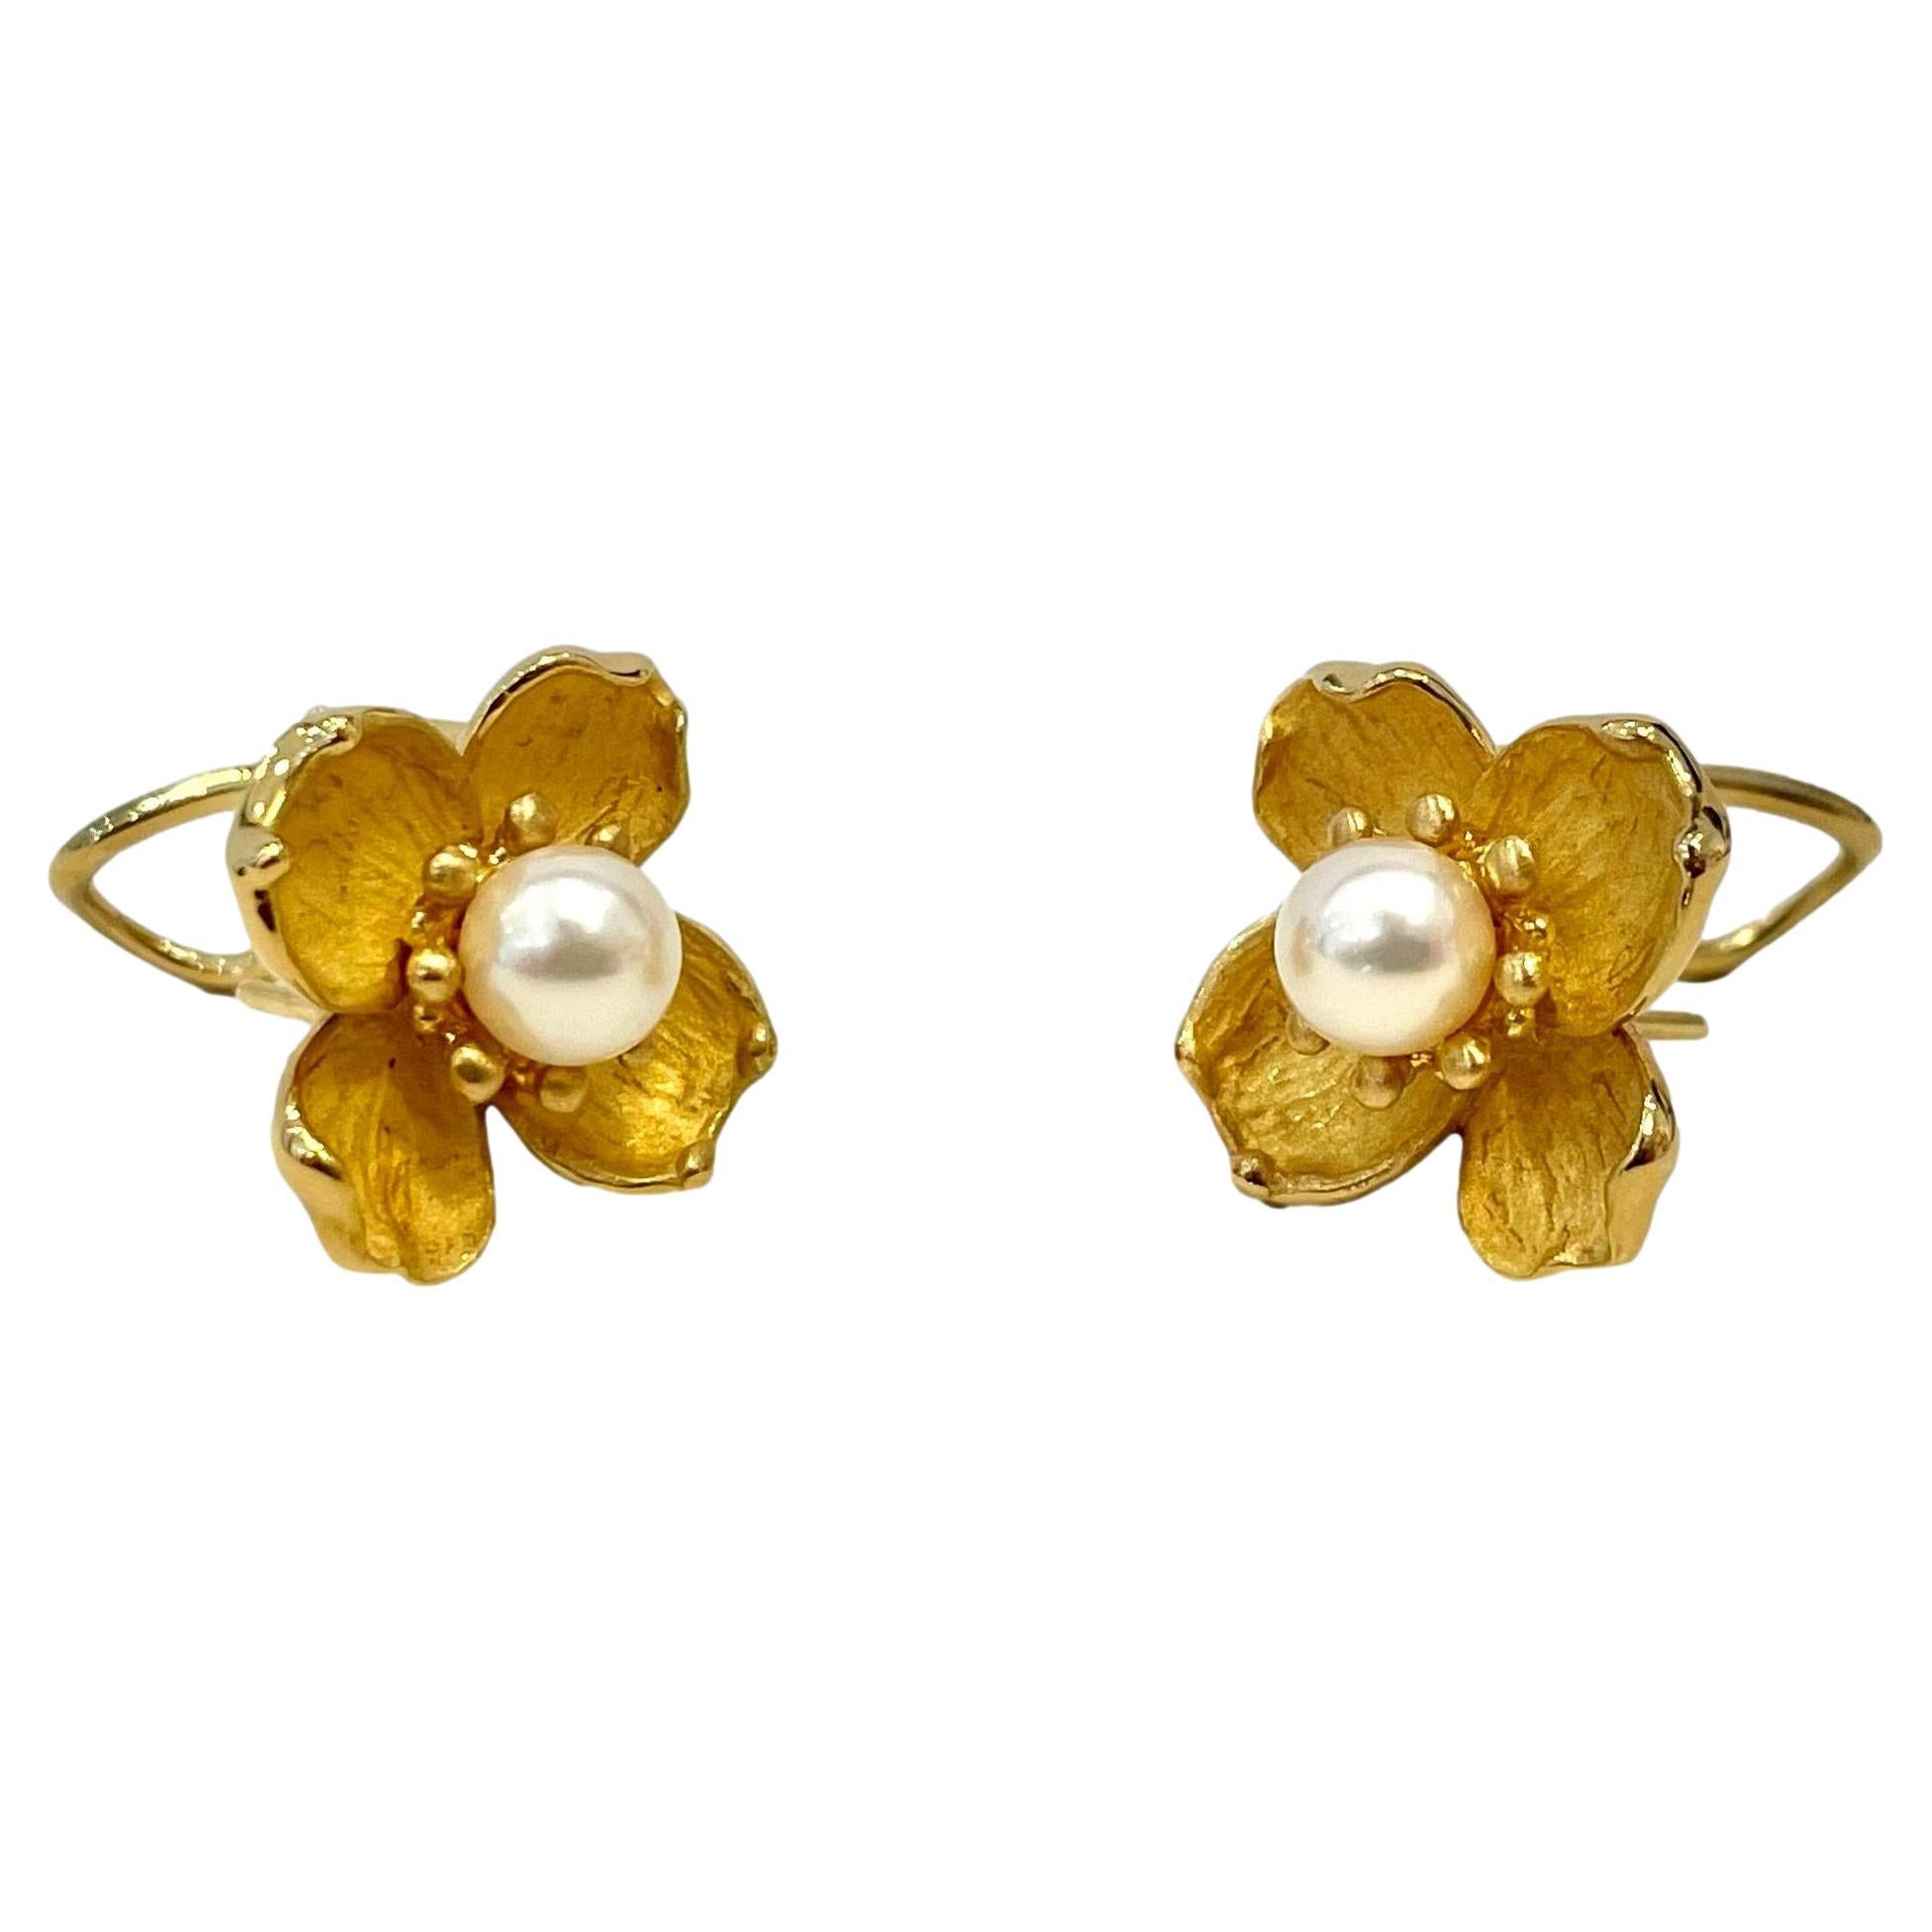 Tiffany & Co. Dogwood & Pearl Earrings in 18 Karat Yellow Gold For Sale